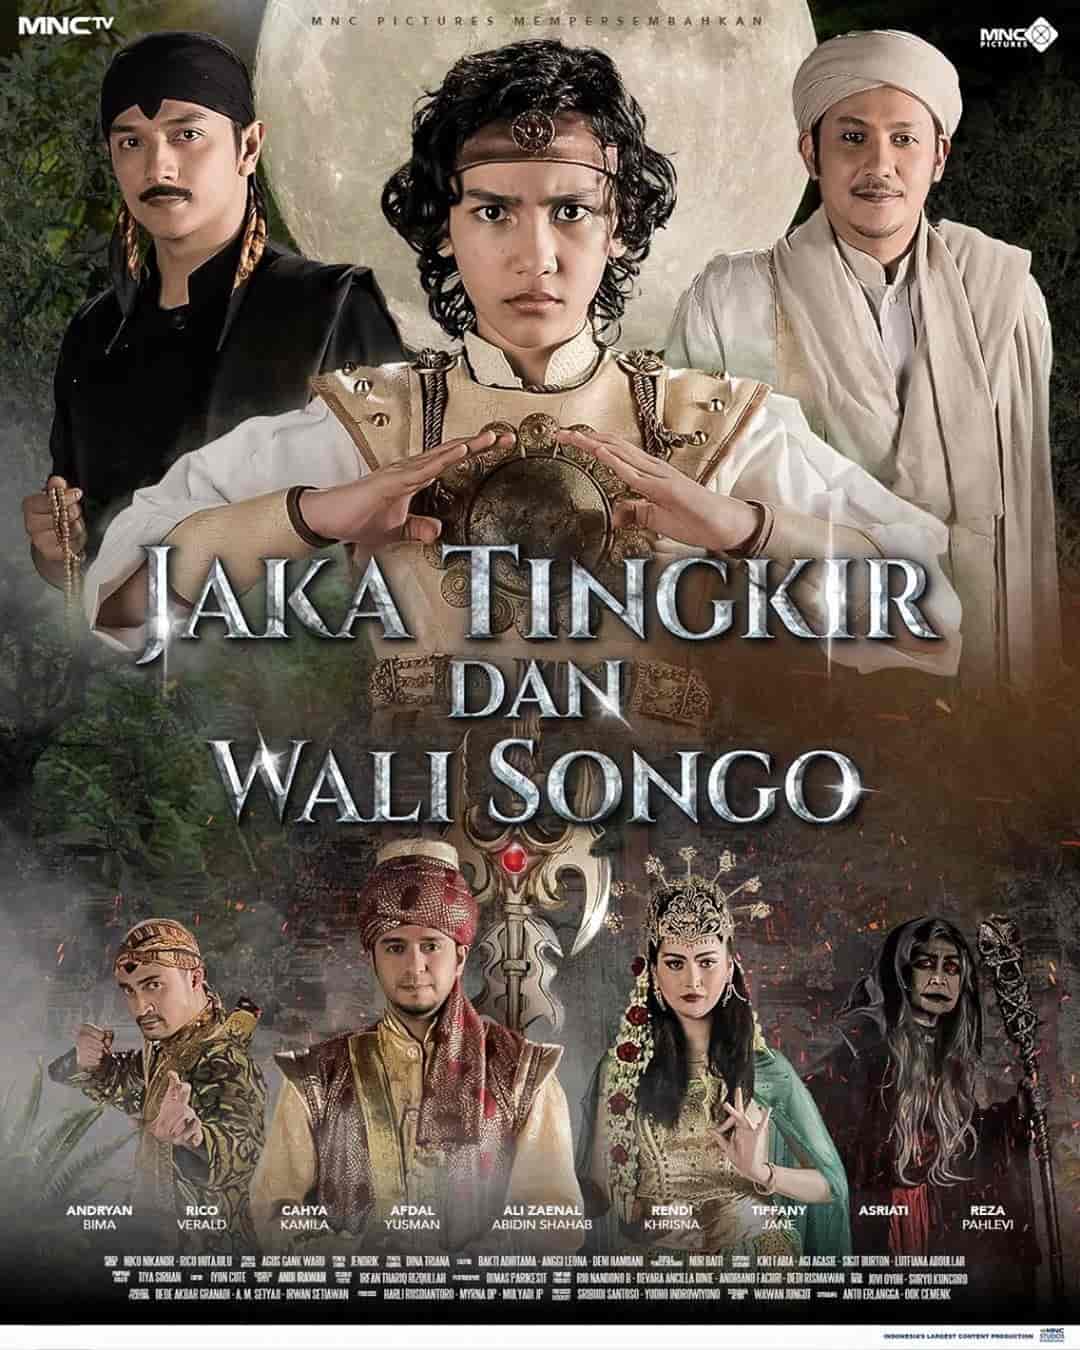 Sinopsis Jaka Tingkir dan Wali Songo Episode 1 - Terakhir Lengkap